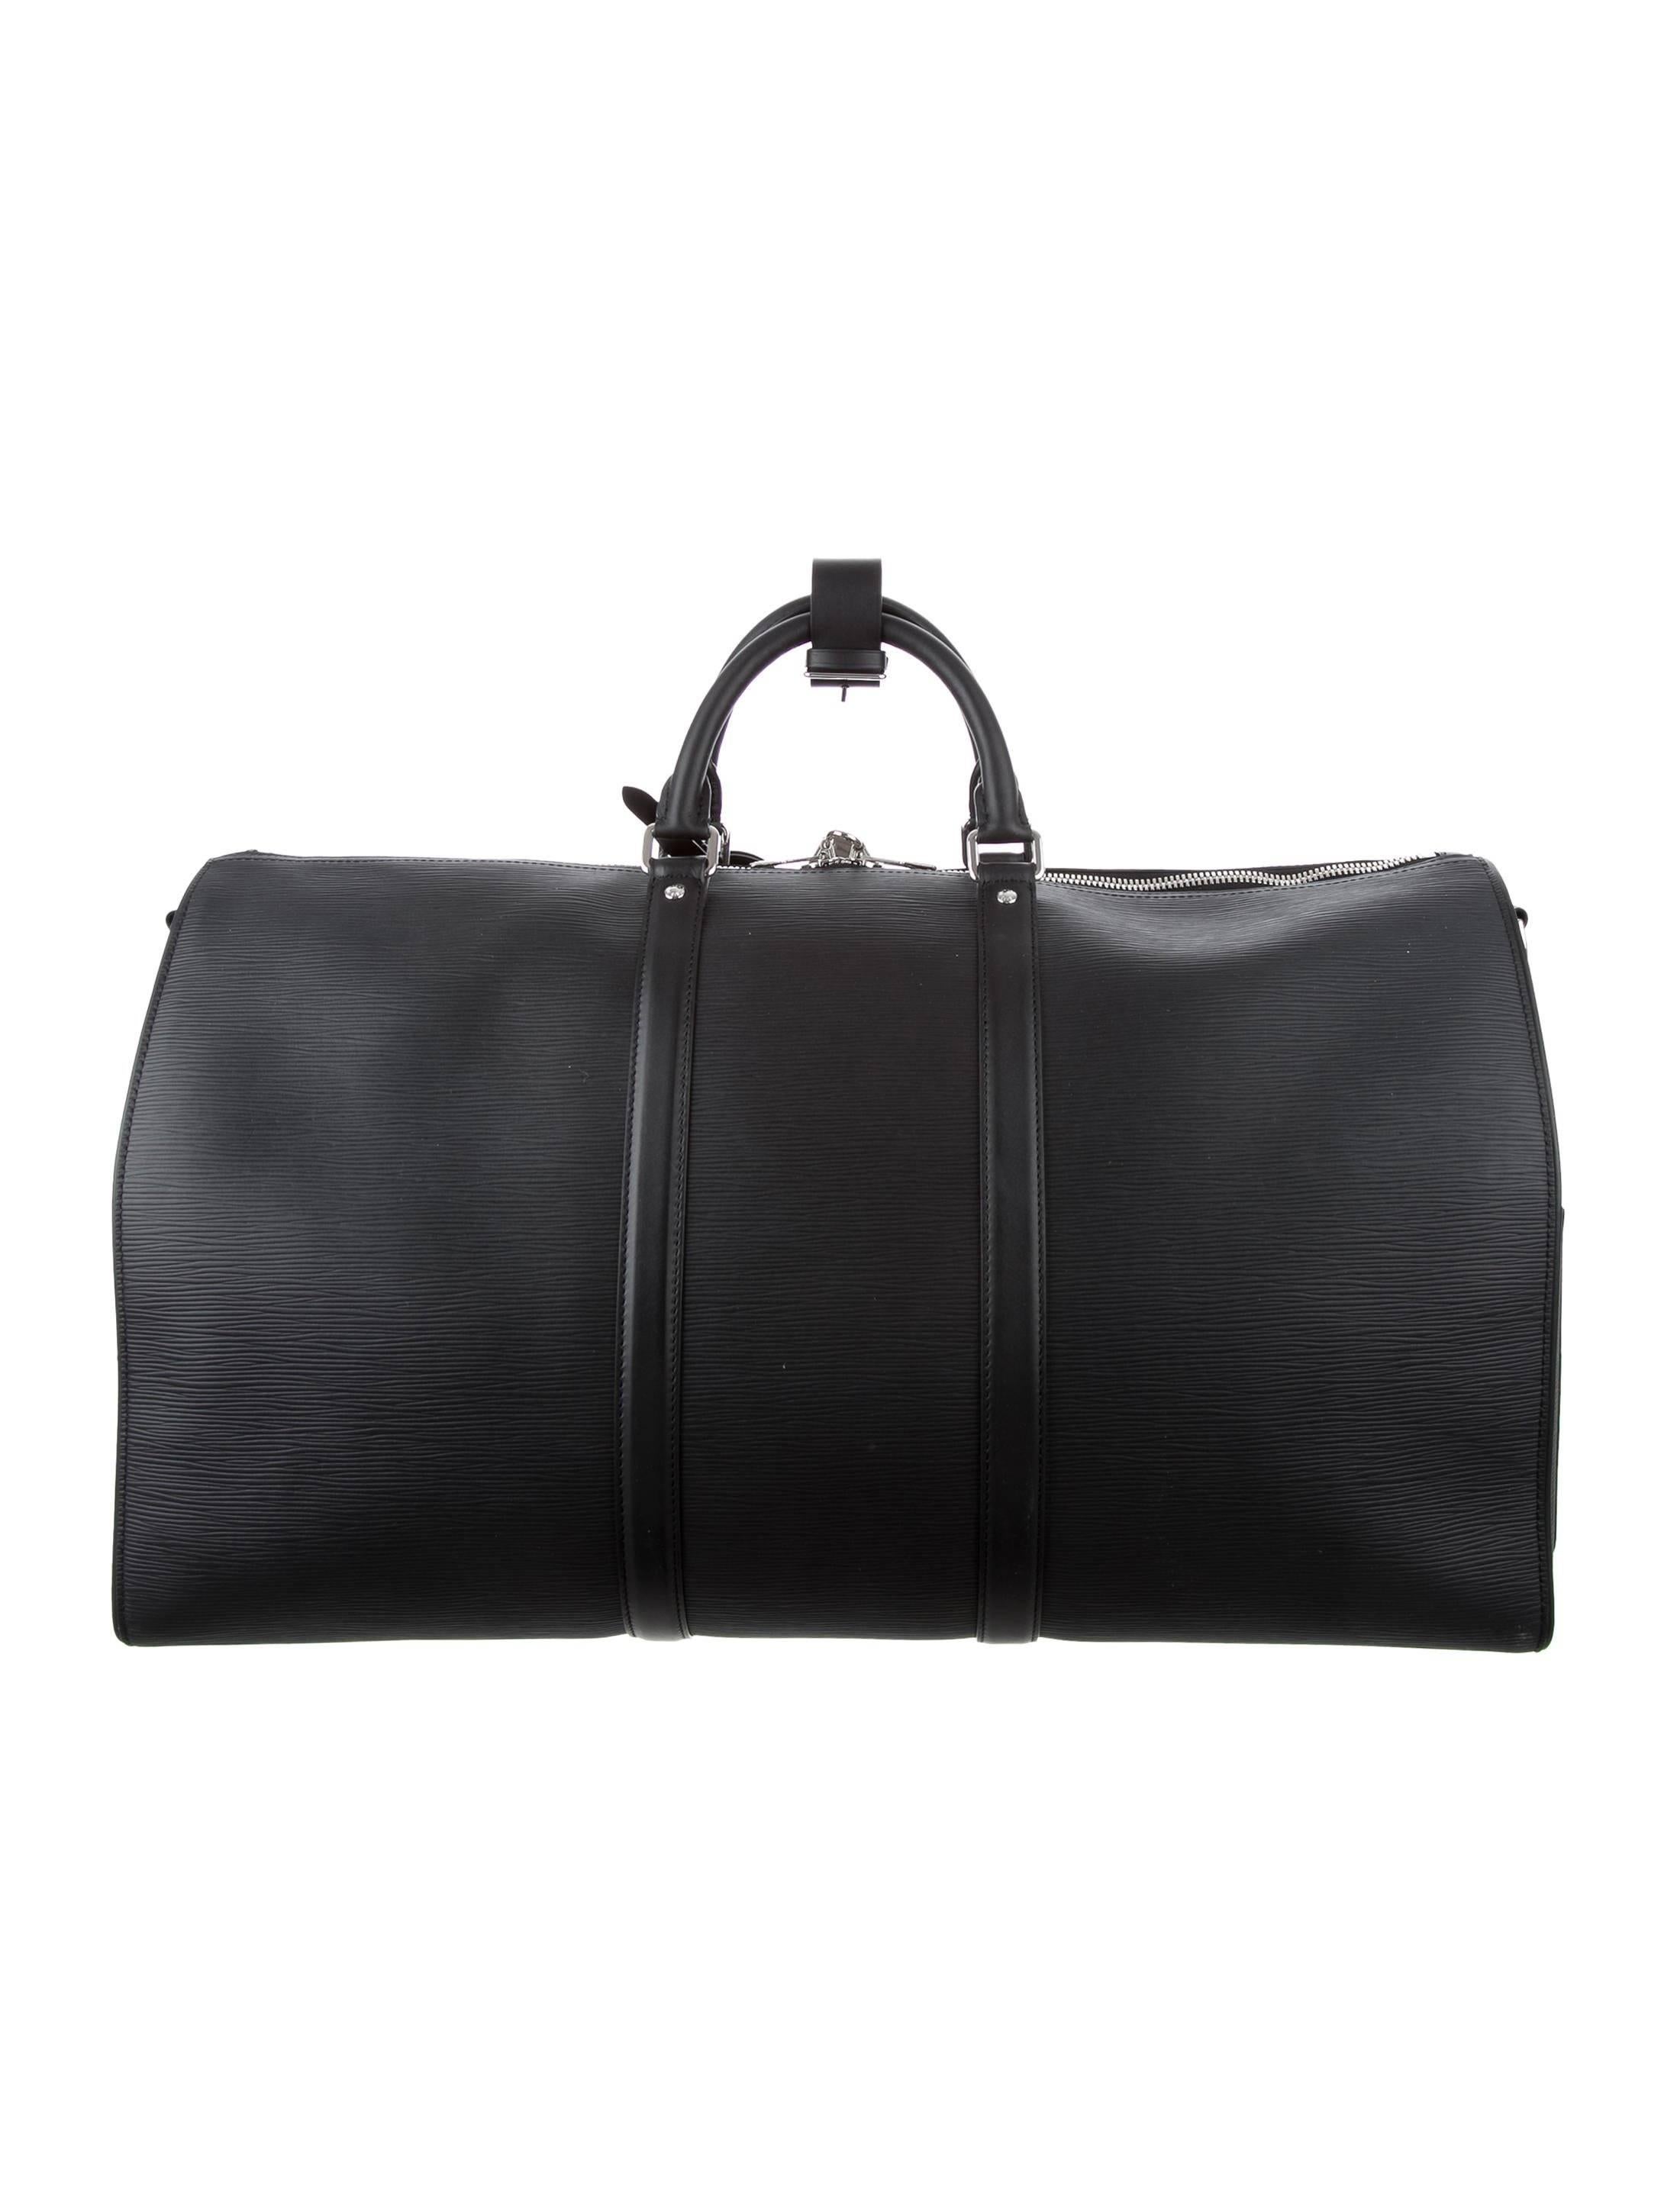 Noir Louis Vuitton Supreme NEW Black Leather Men's Travel Duffle Carryall Bag in Box (sac de voyage en cuir noir)